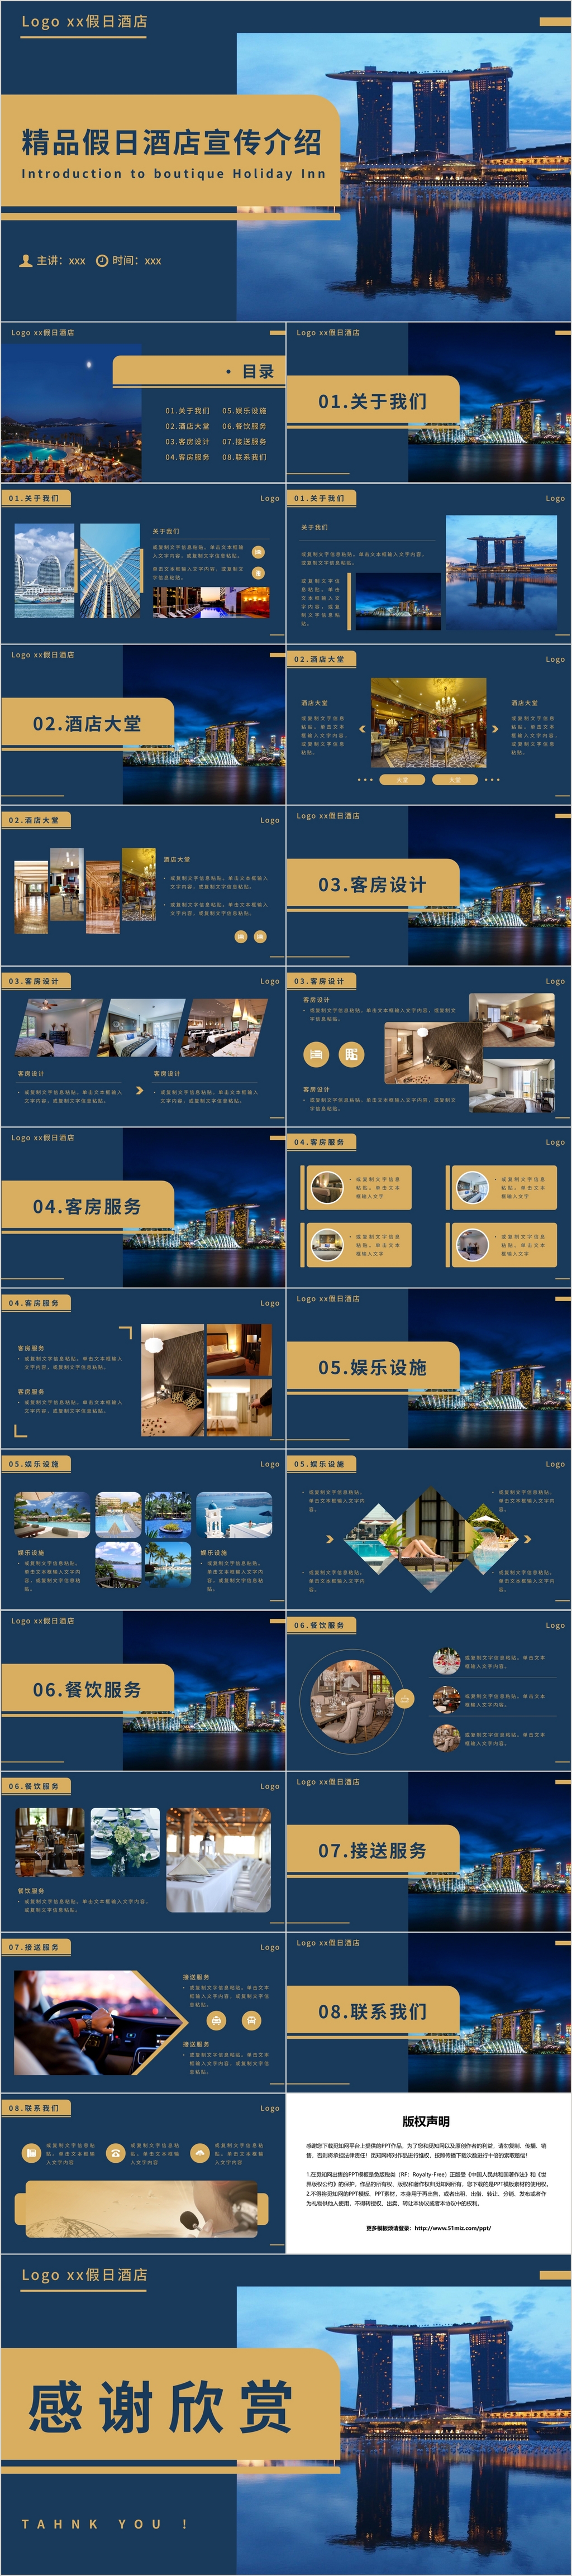 蓝色简约风精品假日酒店宣传介绍PPT模板